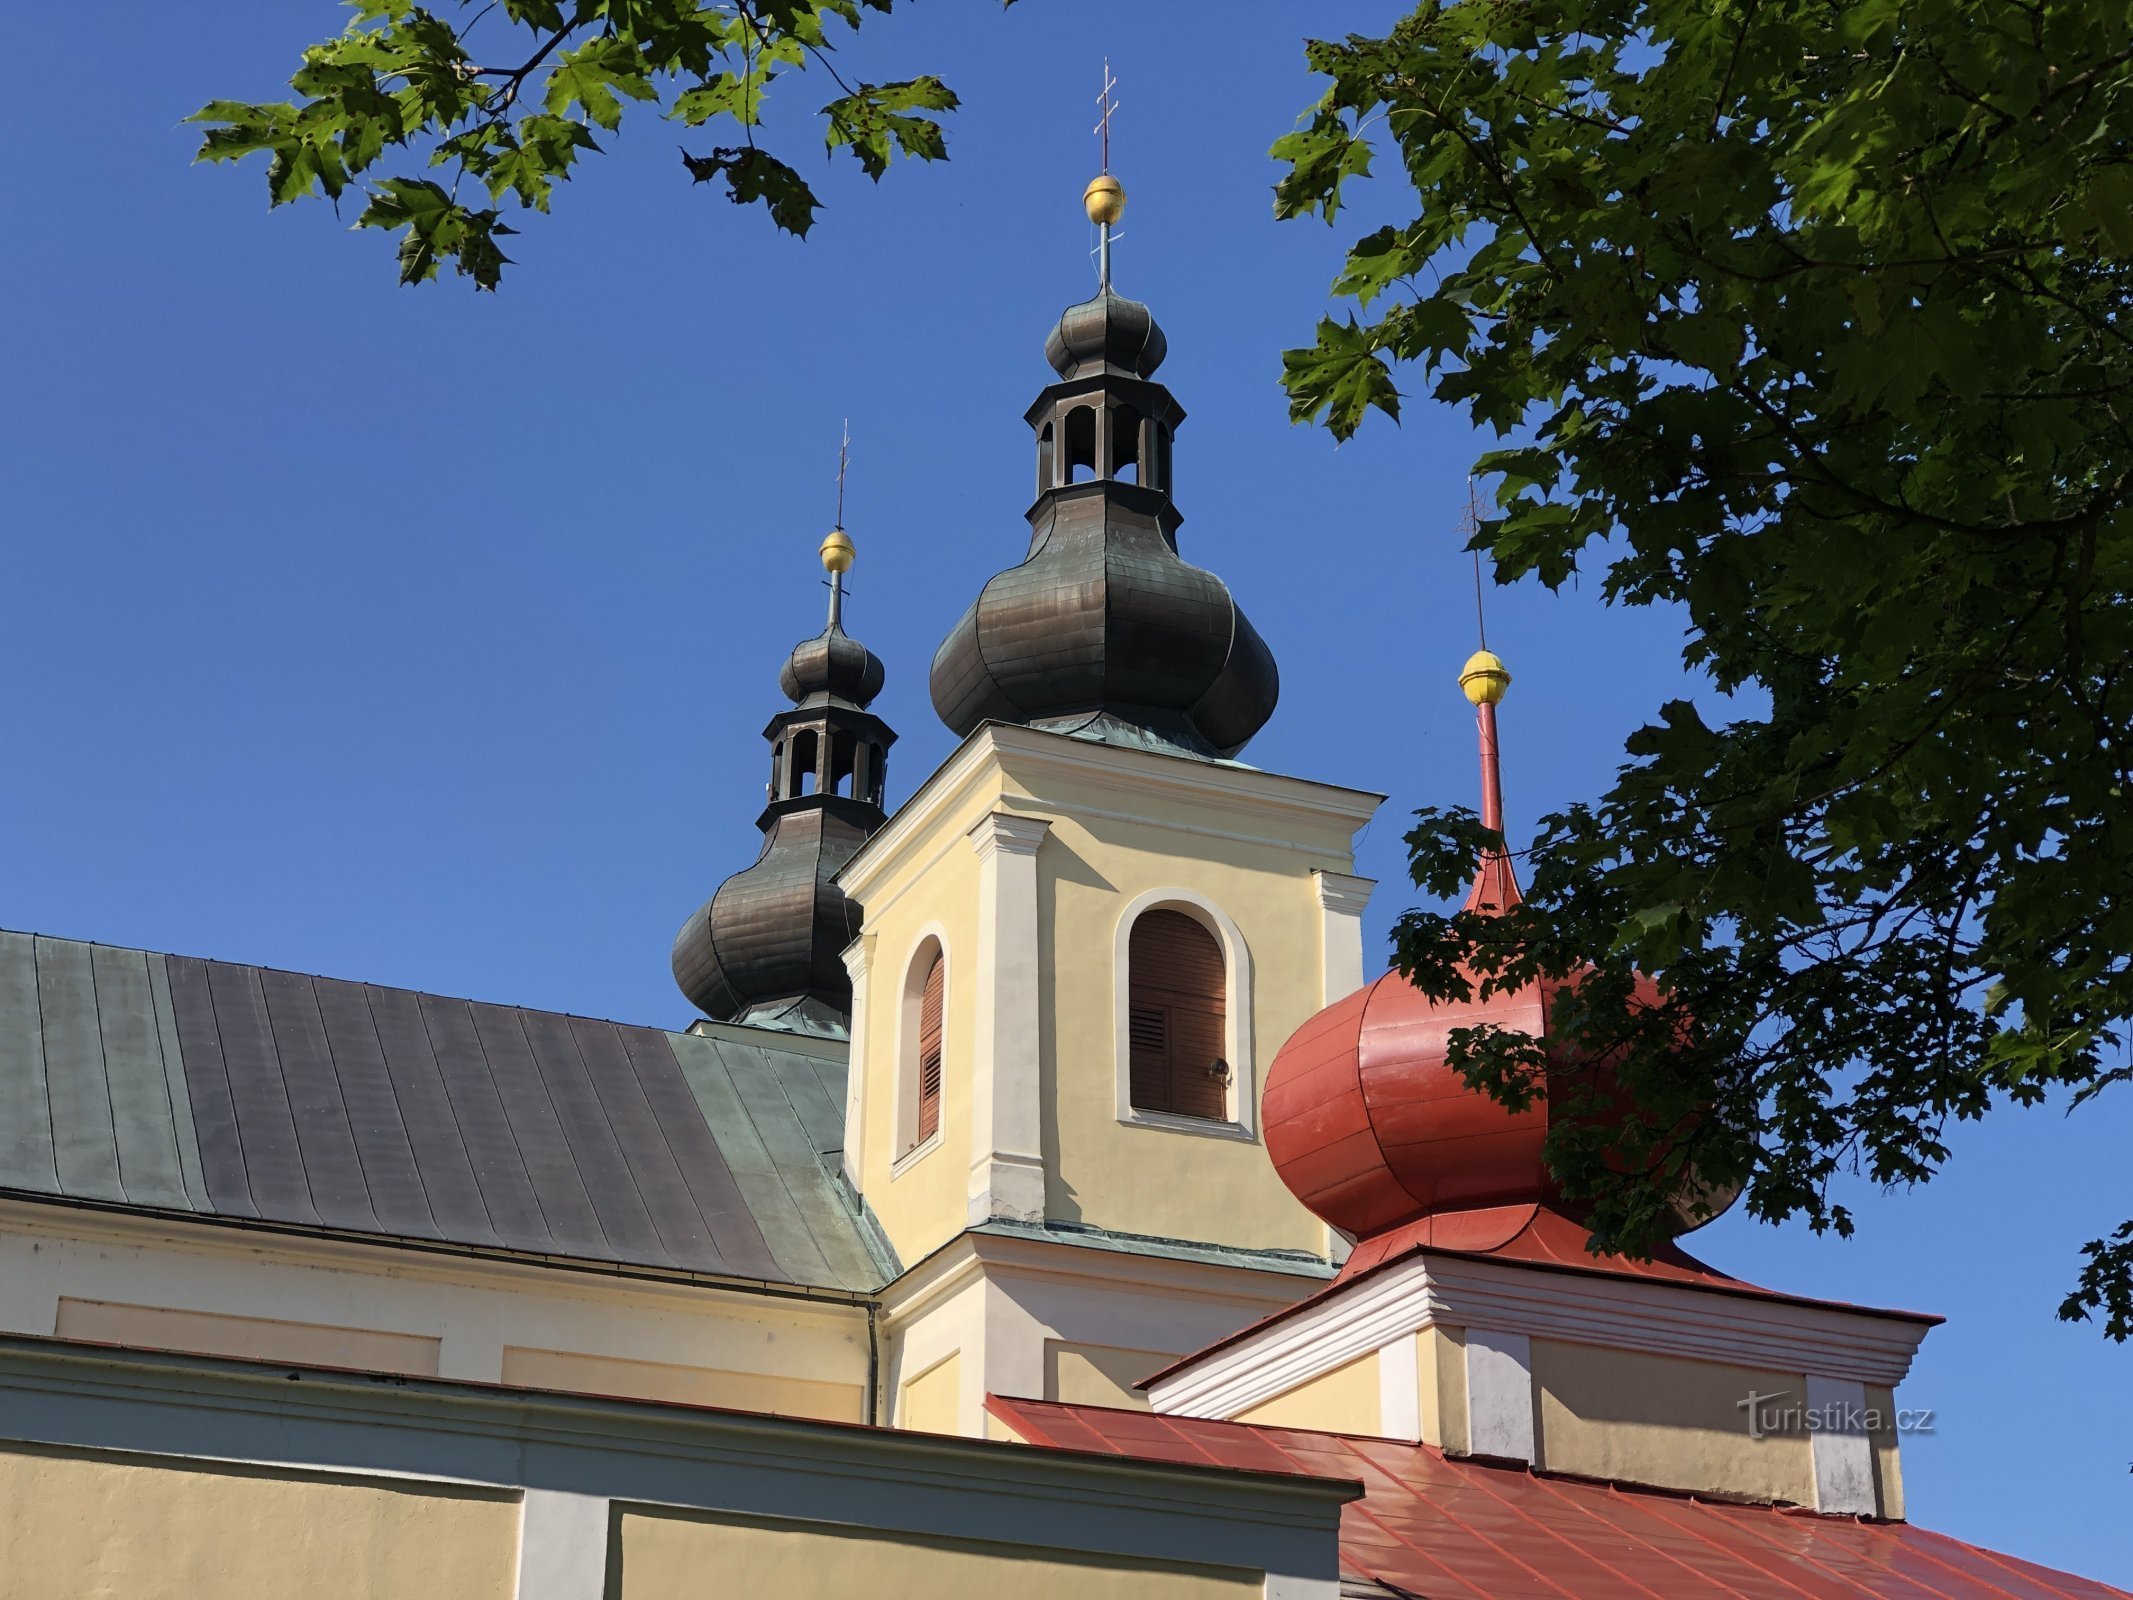 Kostel byl vysvěcen 21. srpna roku 1700, zdroj: Hřebenovka.cz